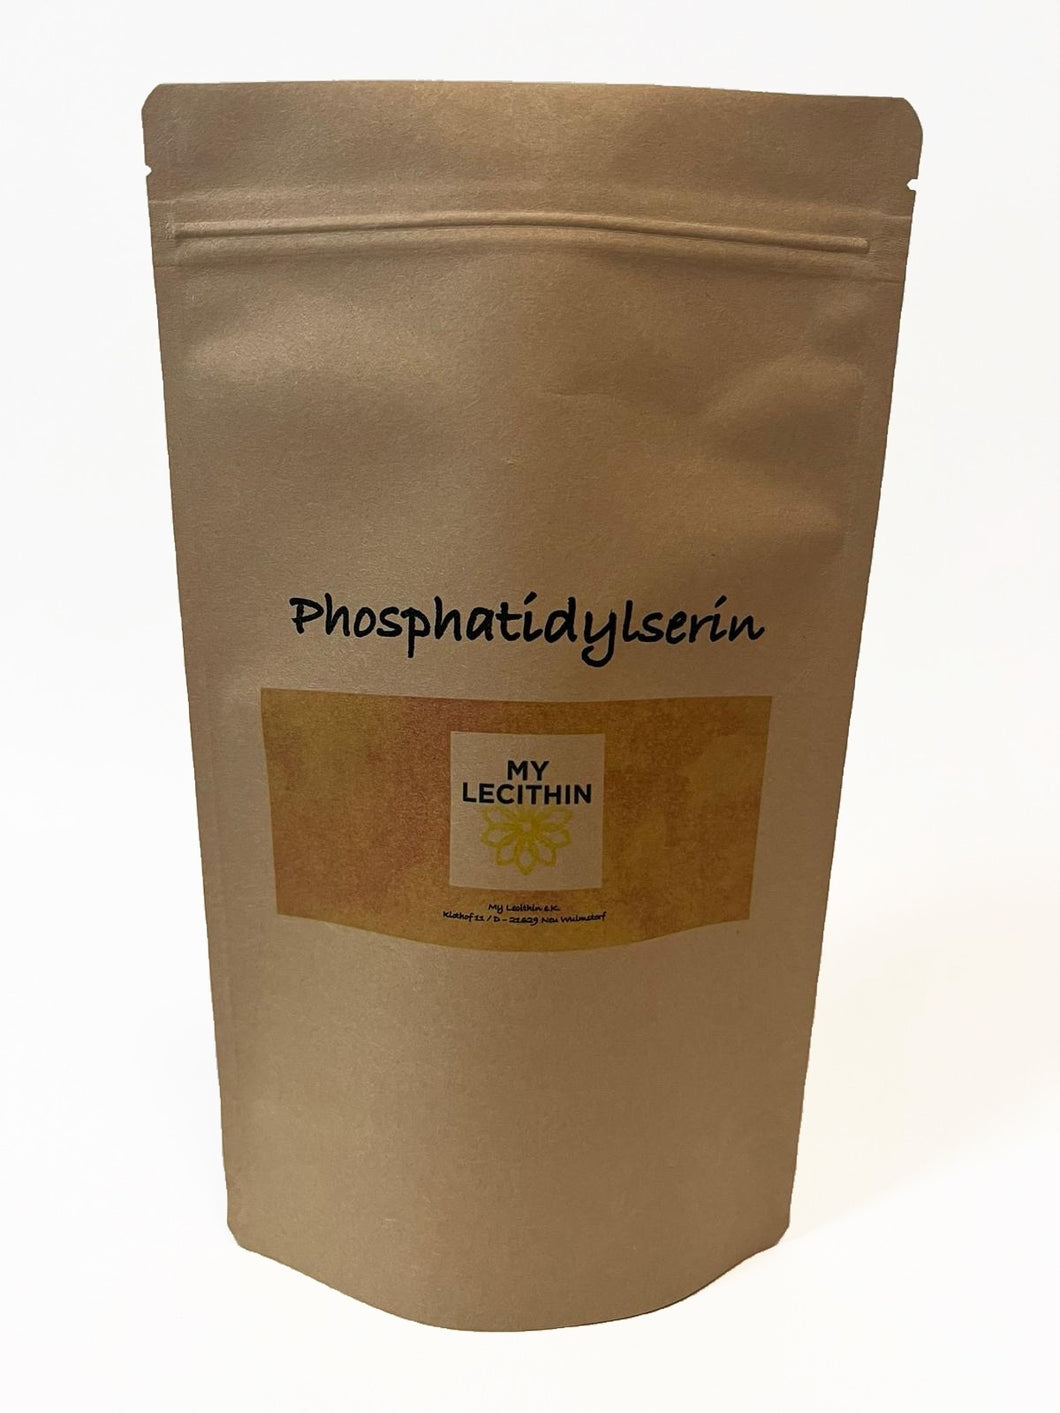 Poudre de phosphatidylsérine (PS) (abaissant le cortisol) à partir de lécithine de soja